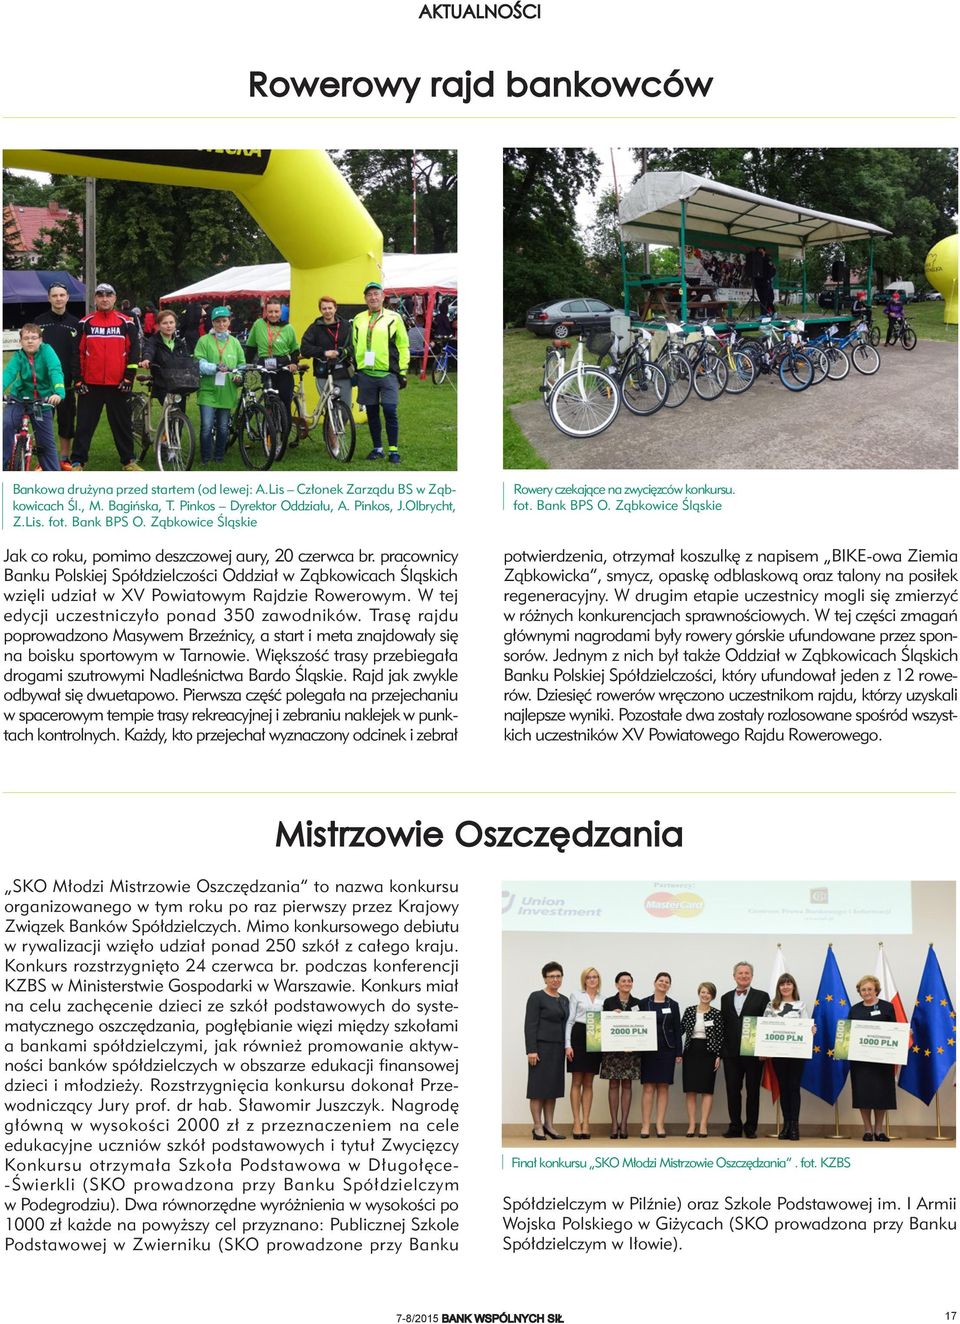 pracownicy Banku Polskiej Spółdzielczości Oddział w Ząbkowicach Śląskich wzięli udział w XV Powiatowym Rajdzie Rowerowym. W tej edycji uczestniczyło ponad 350 zawodników.